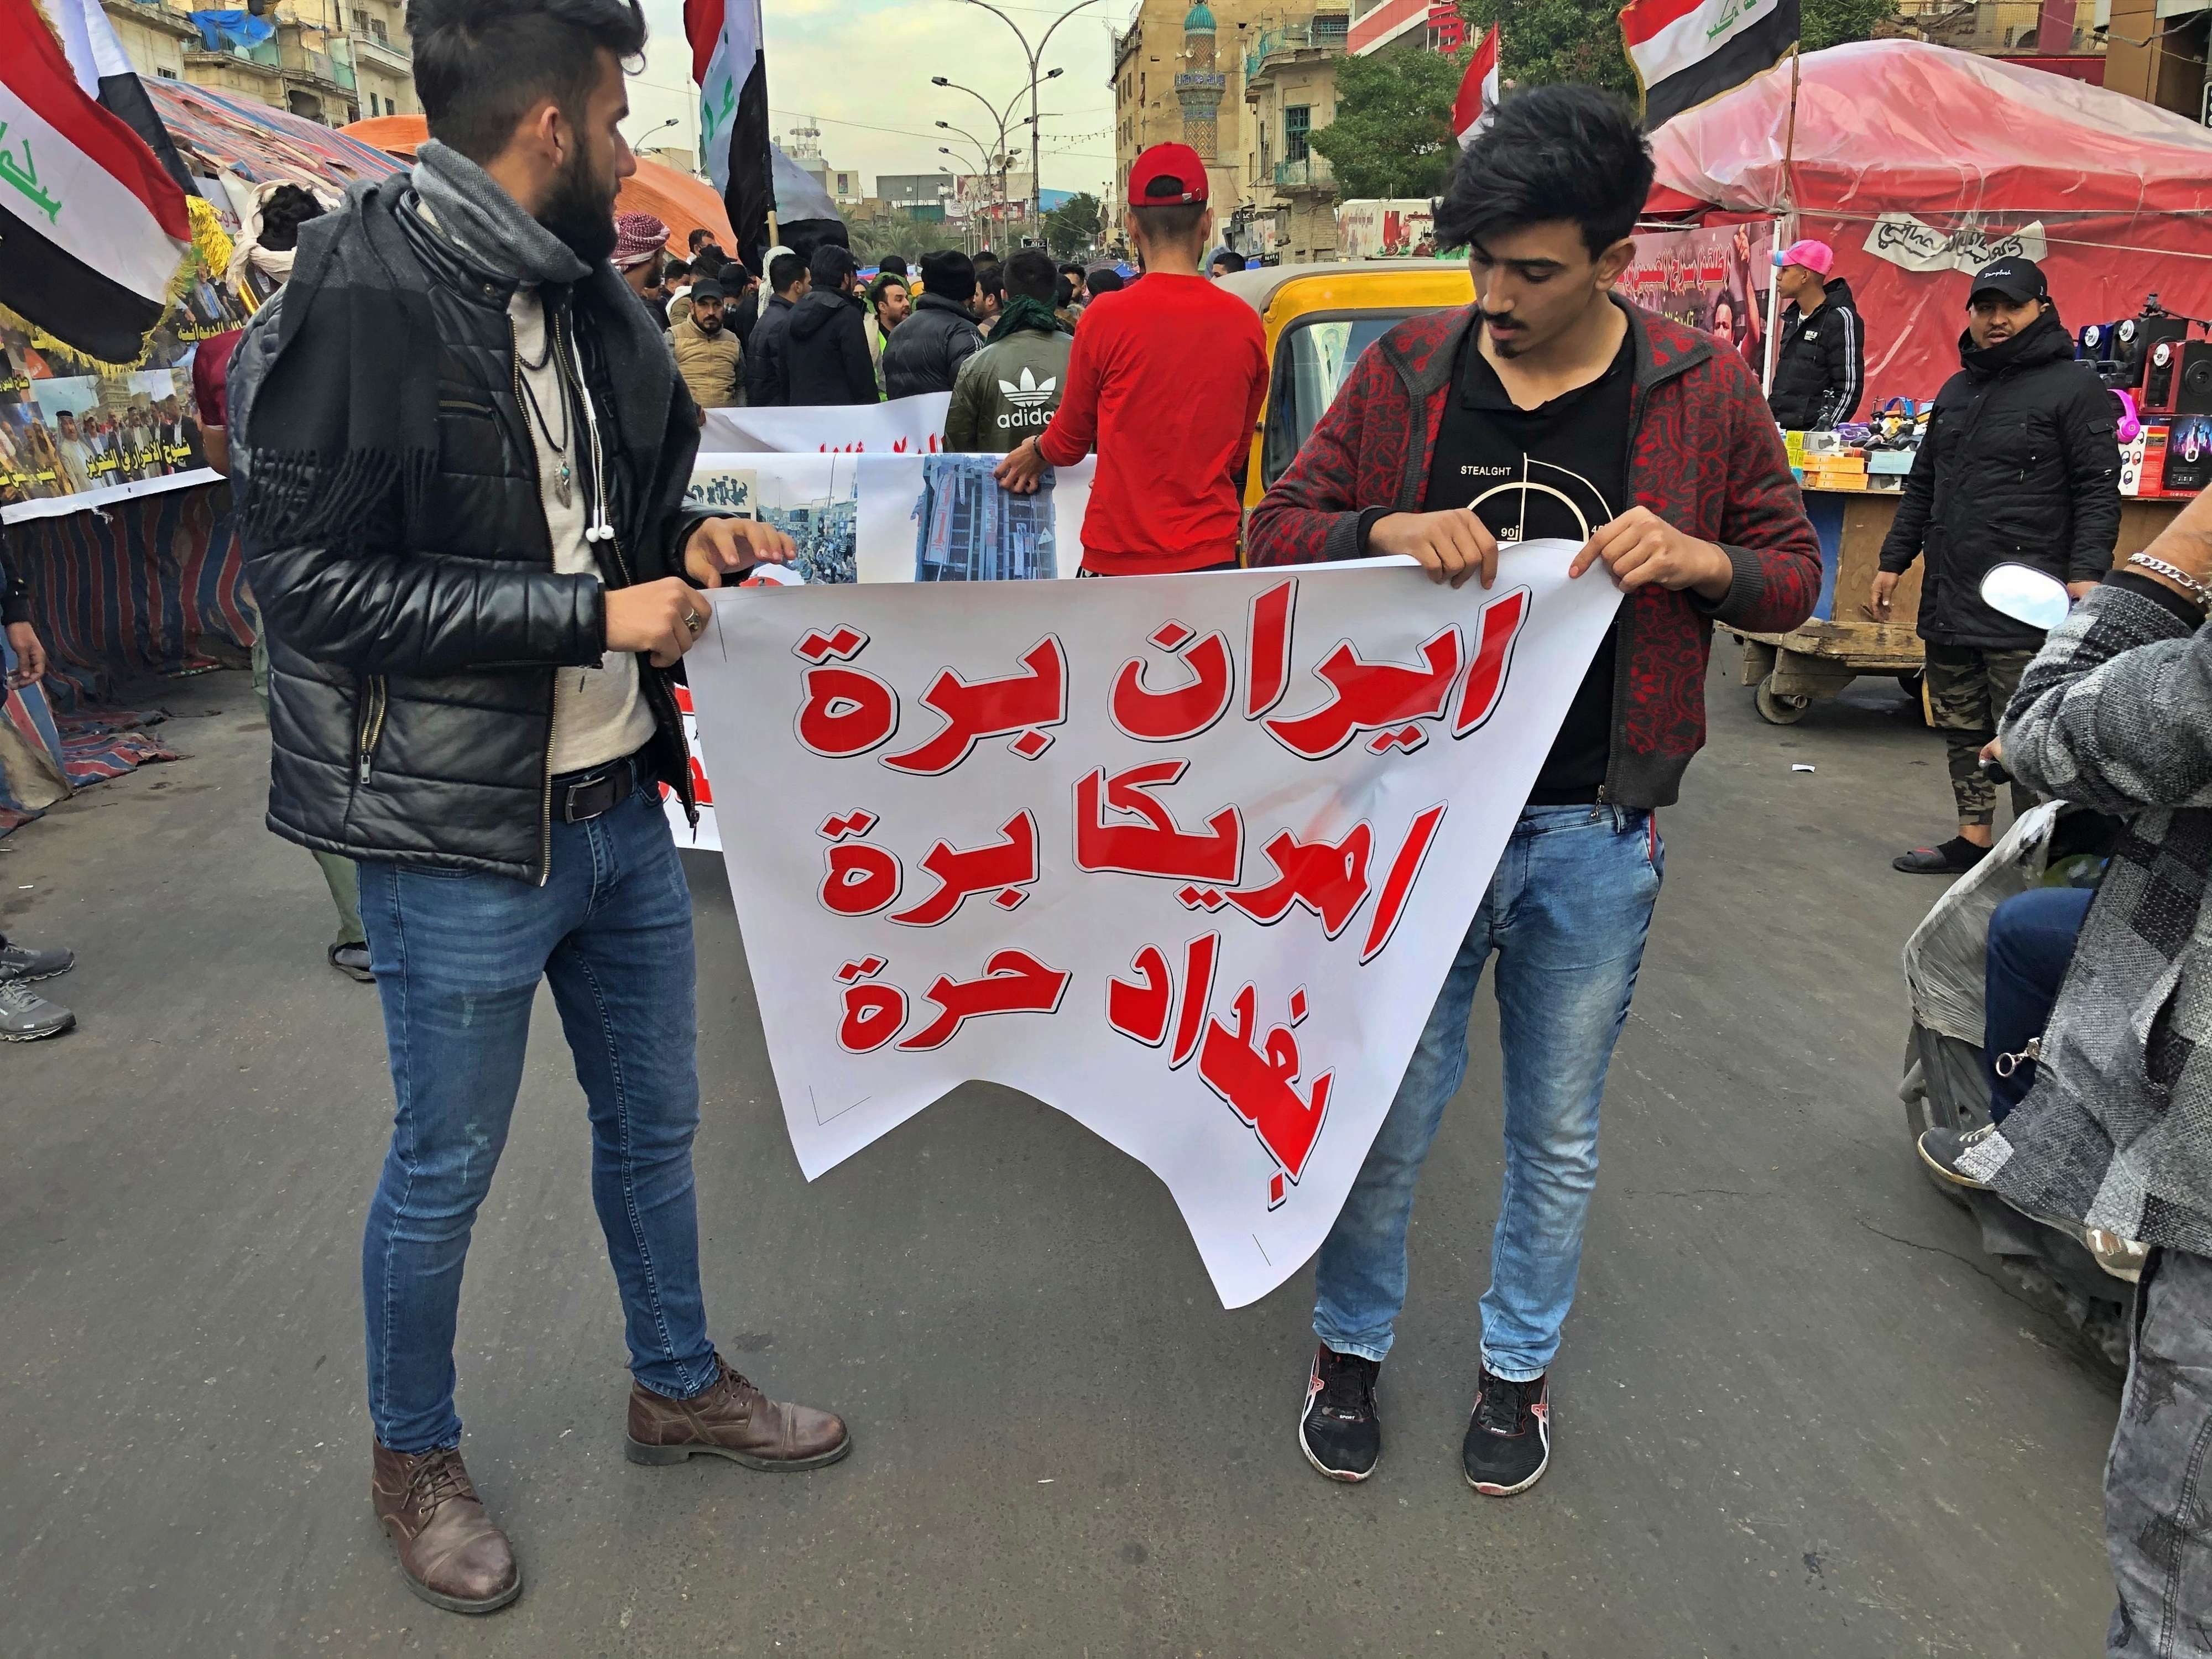 العراقيون ضحايا الصراع الايراني الاميركي في بلدهم ويناضلون لاستعادة السيادة الوطنية